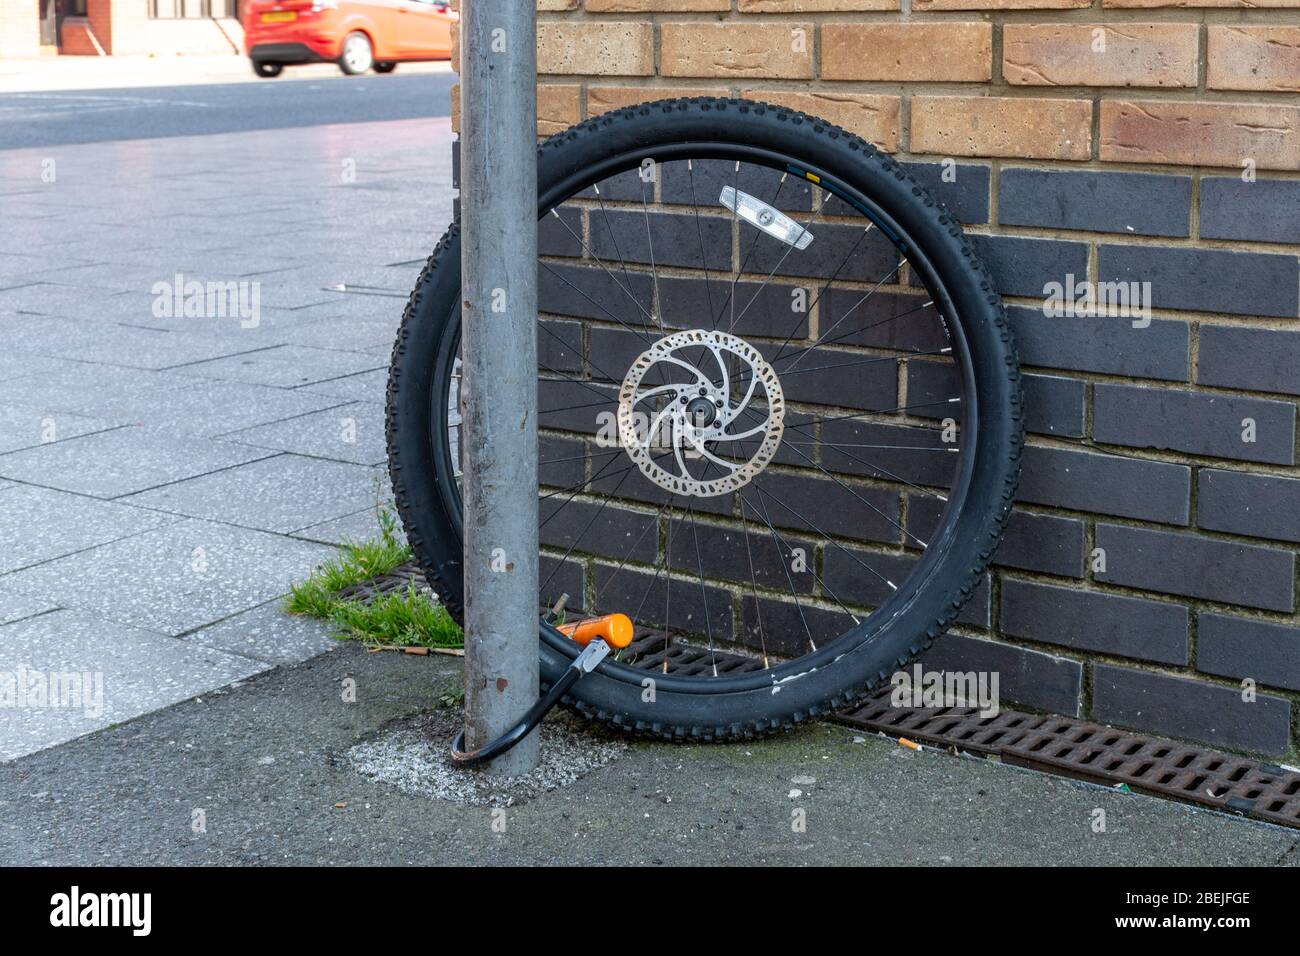 Ein einzelnes Rad, das nach dem Rest des Fahrrads an einen Pfosten gekettet wurde, wurde gestohlen. Fahrrad Diebstahl oder Kriminalität Konzept. Stockfoto